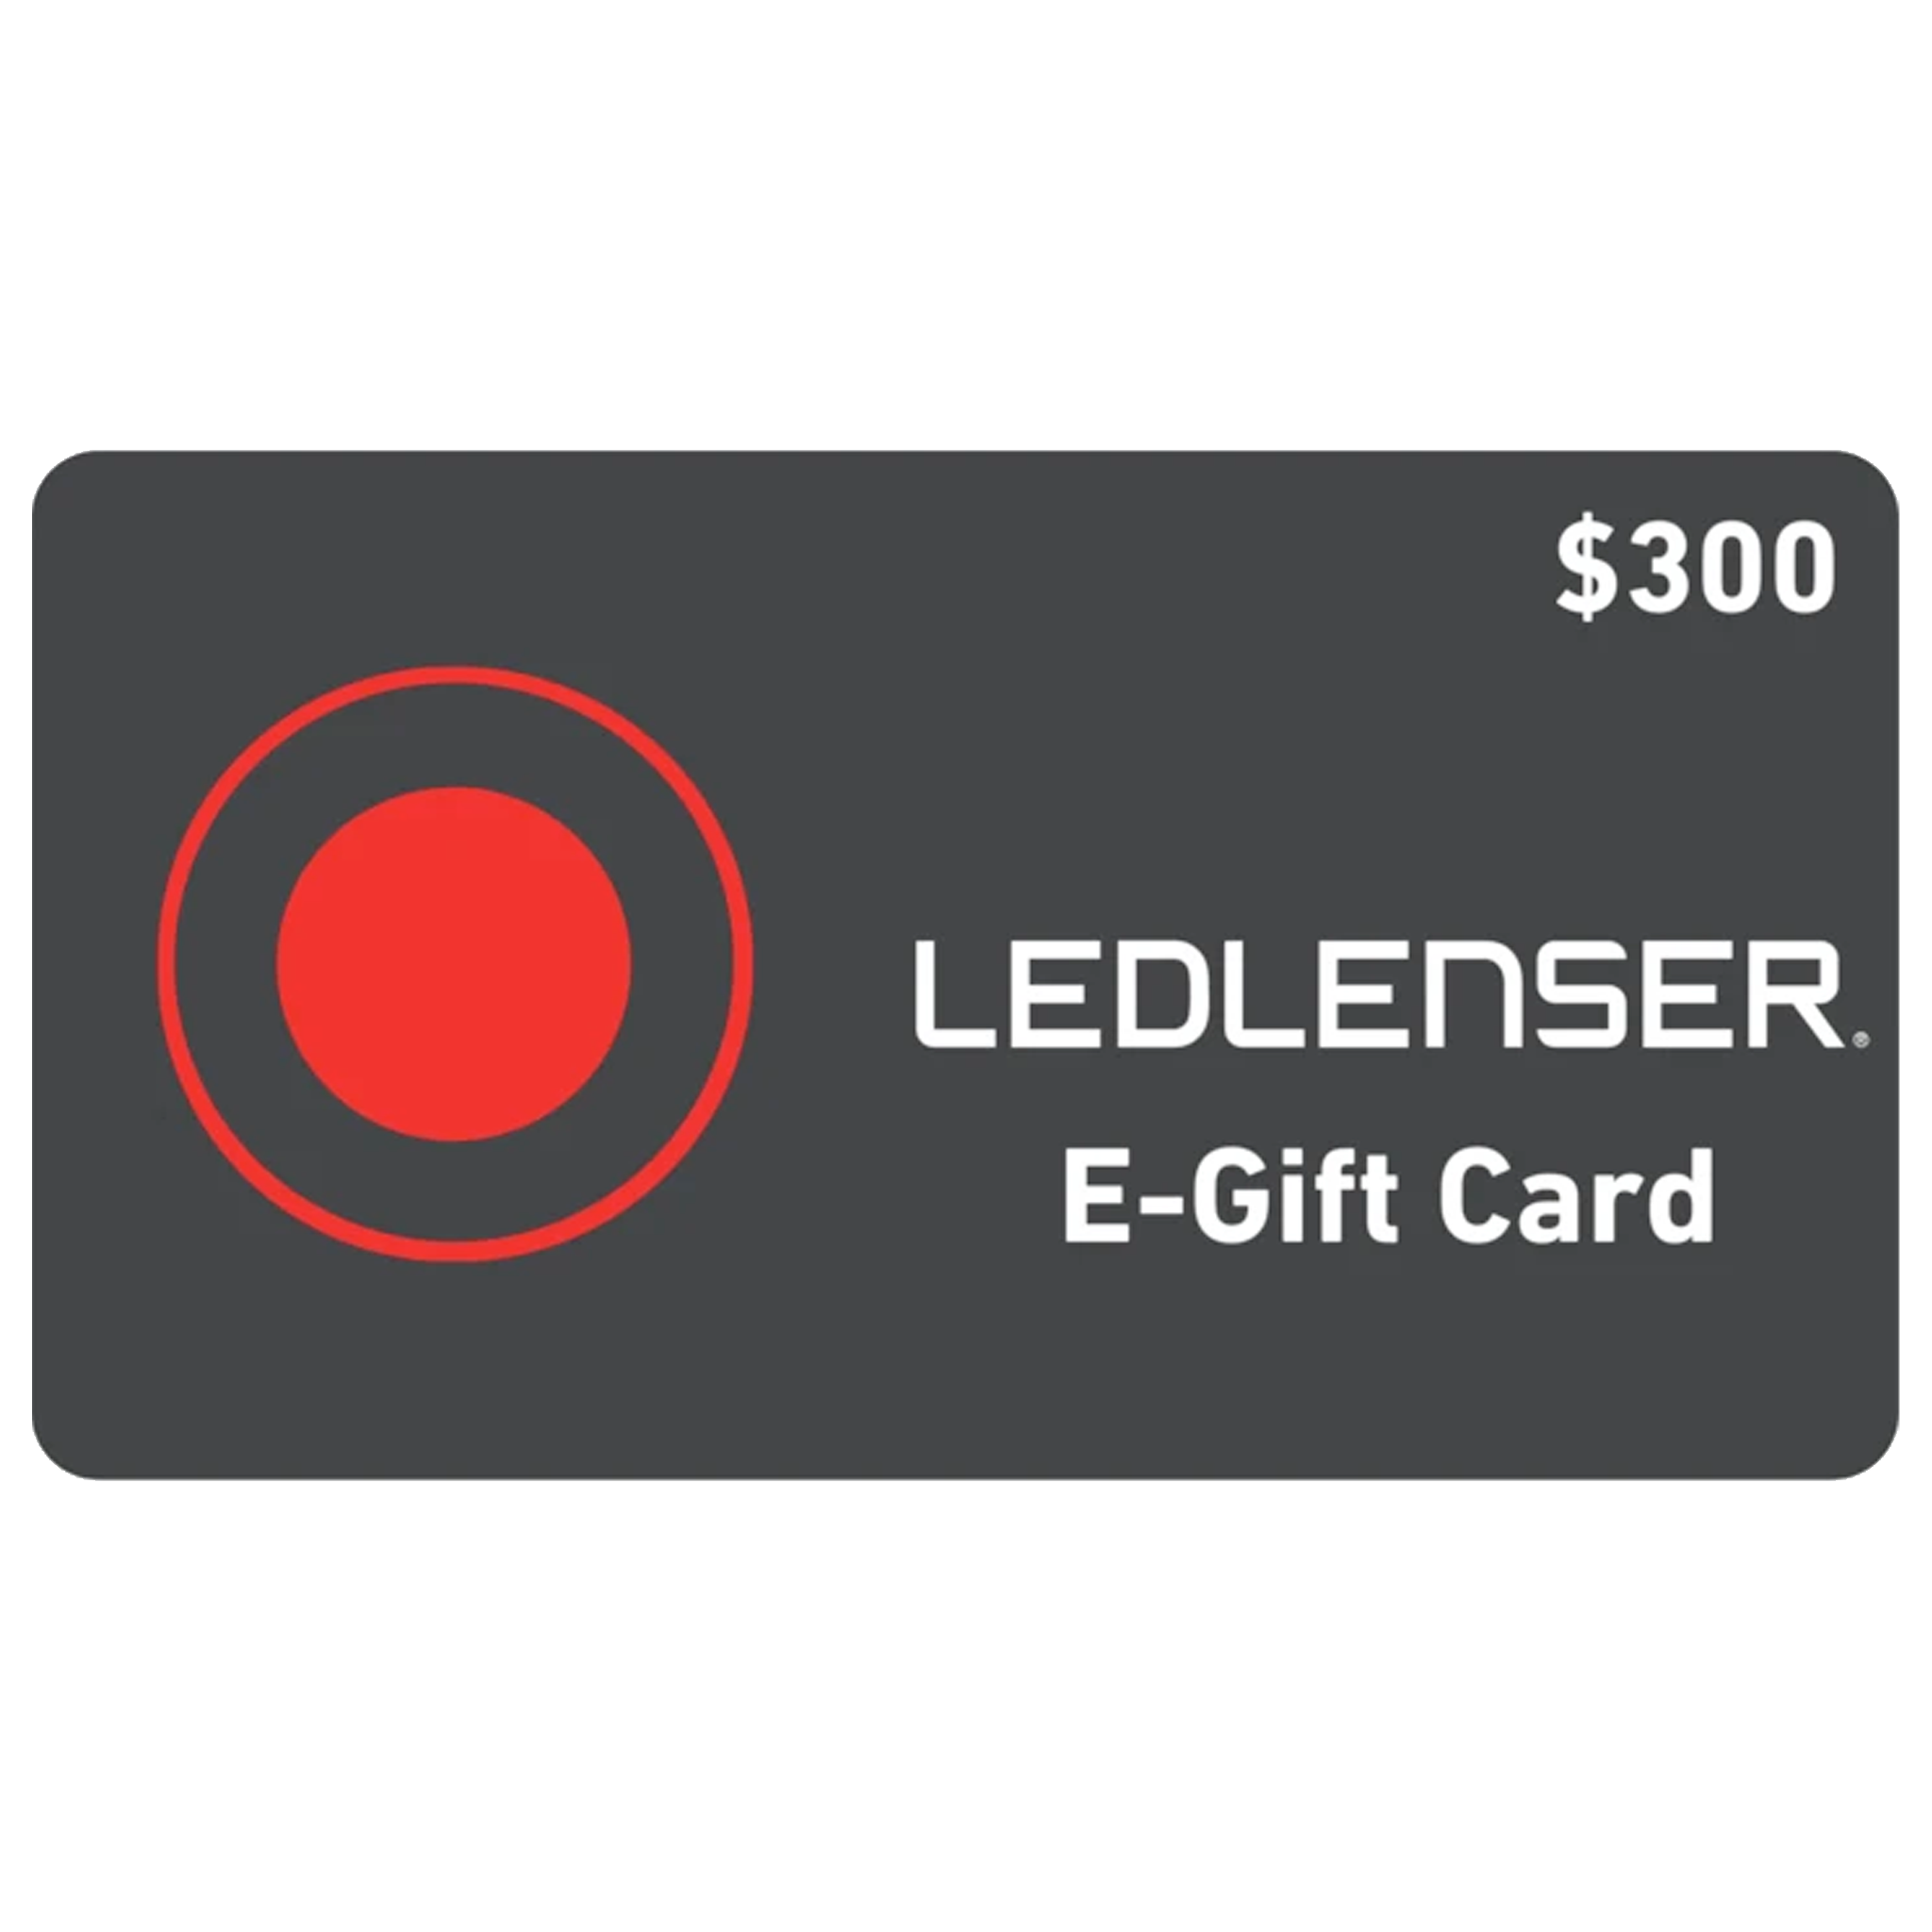 Ledlenser Gift Card - $300